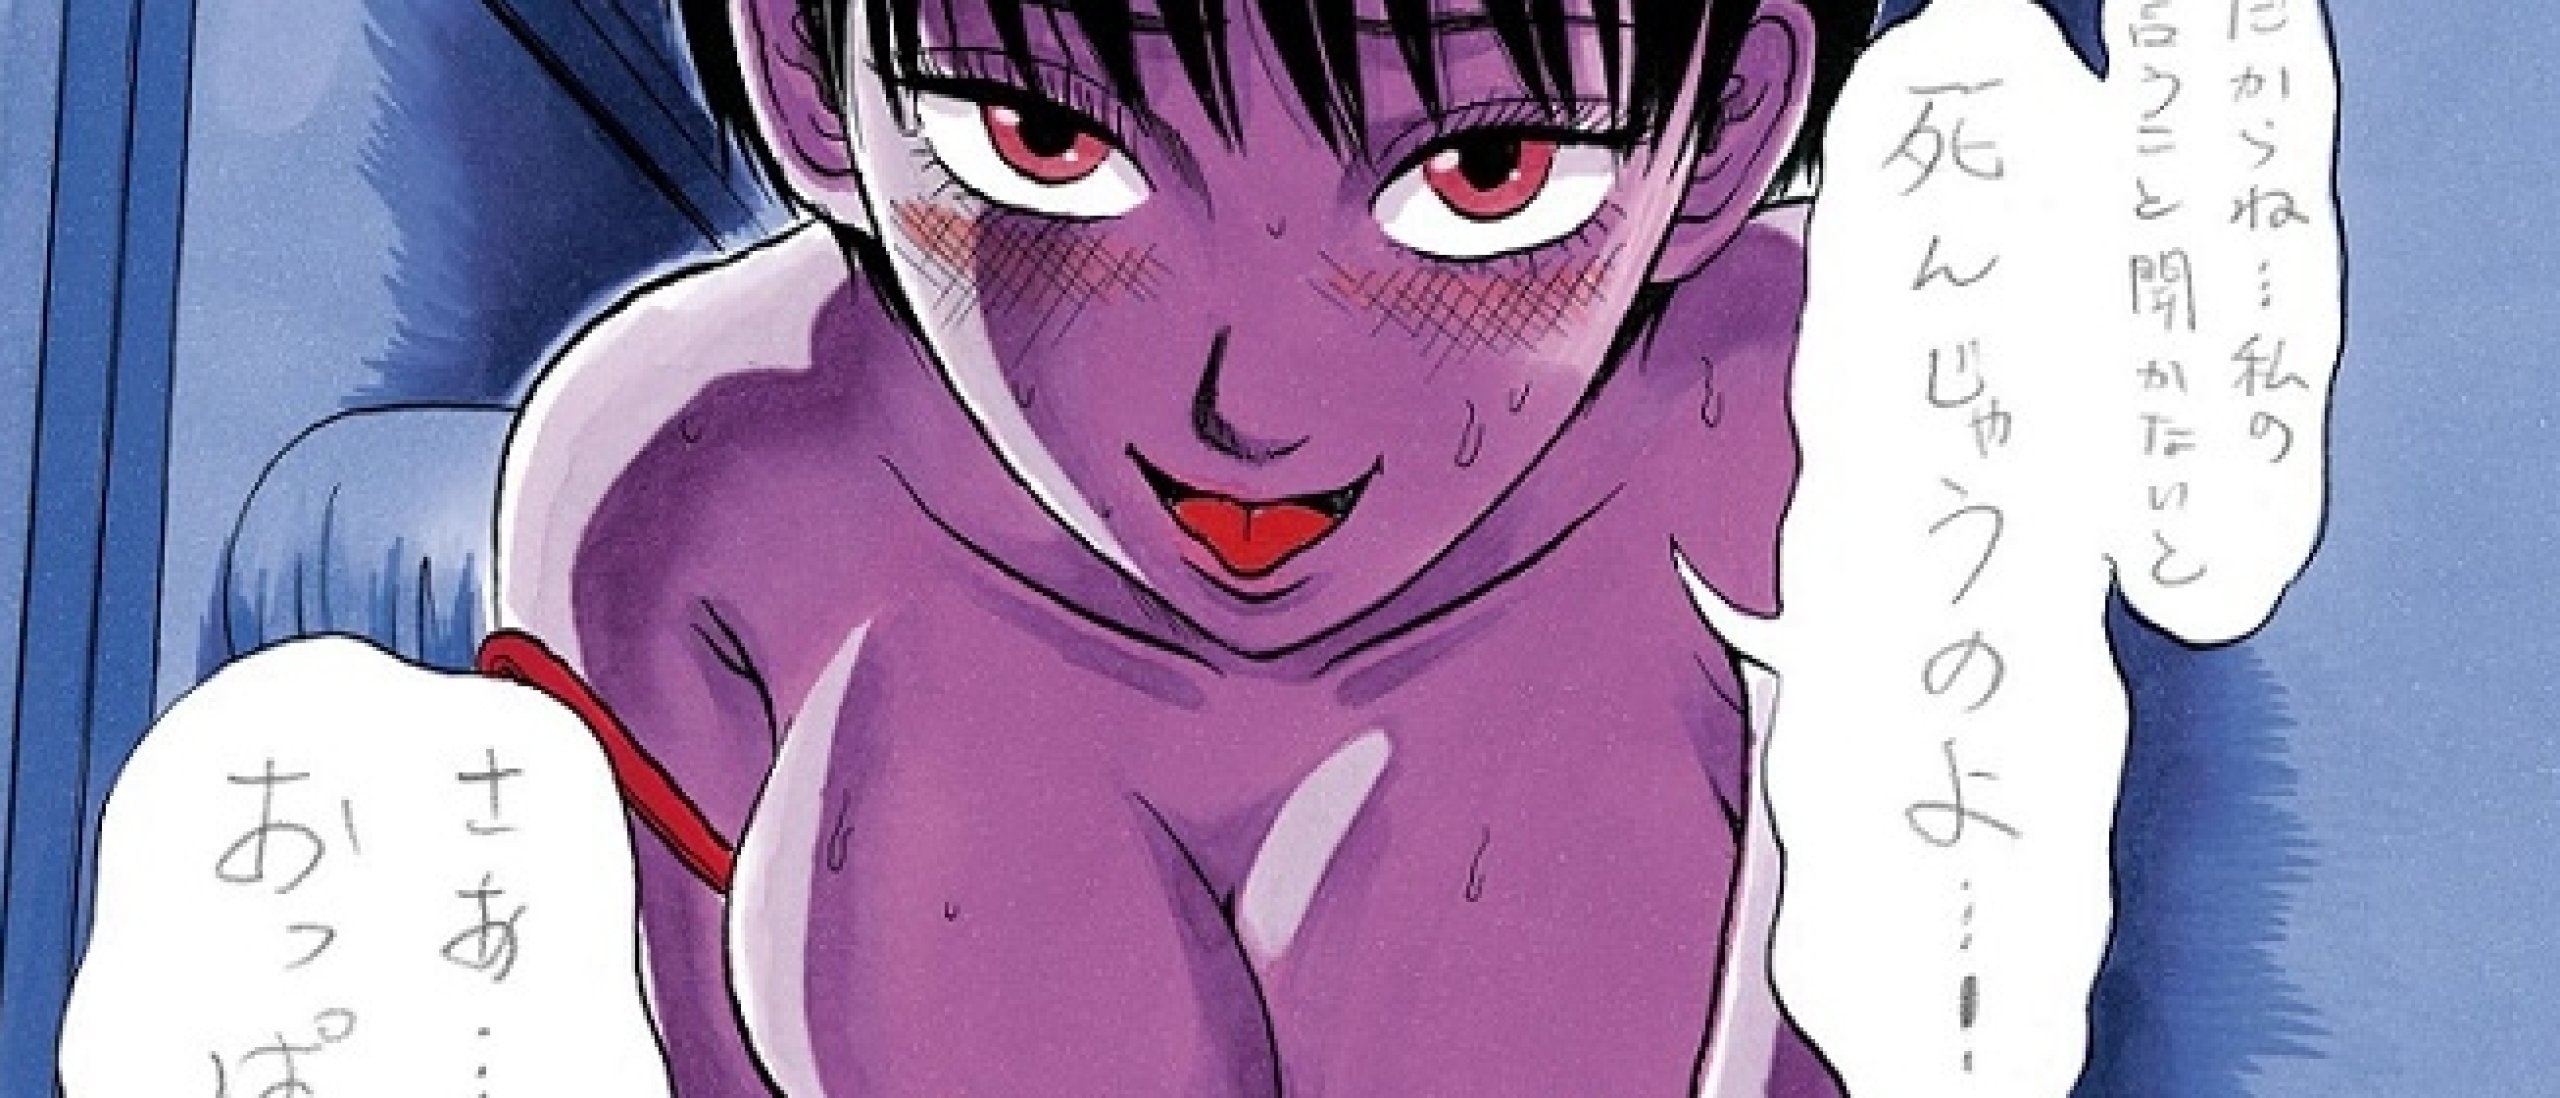 The Coming-Of-Age Eroticism of the Mangaka Shuzo Oshimi